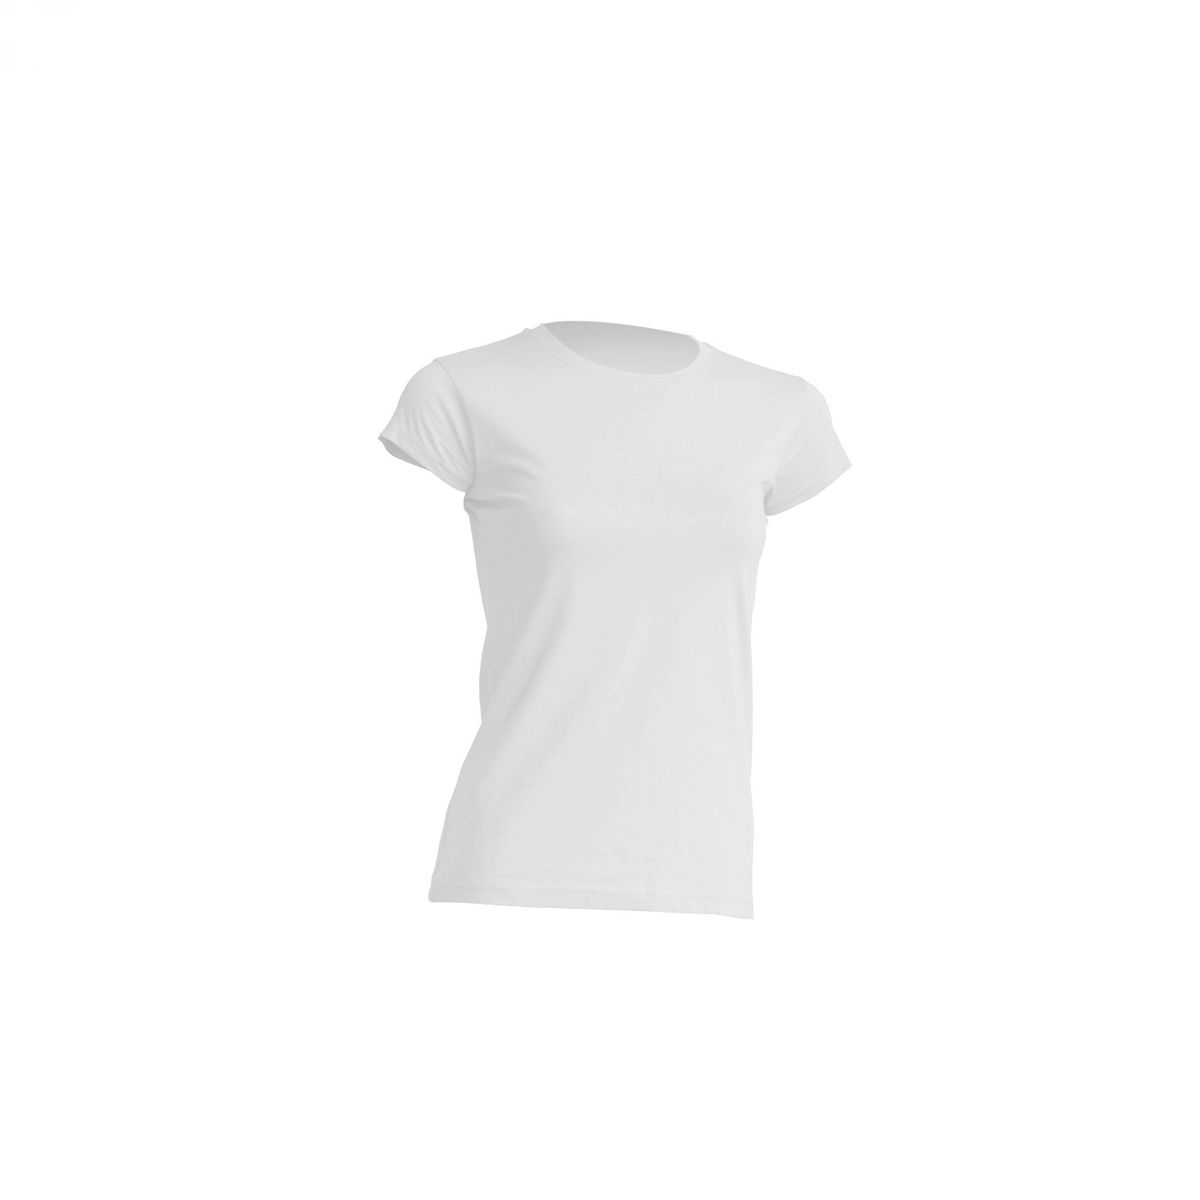 Ženska t-shirt majica r-neck bijela